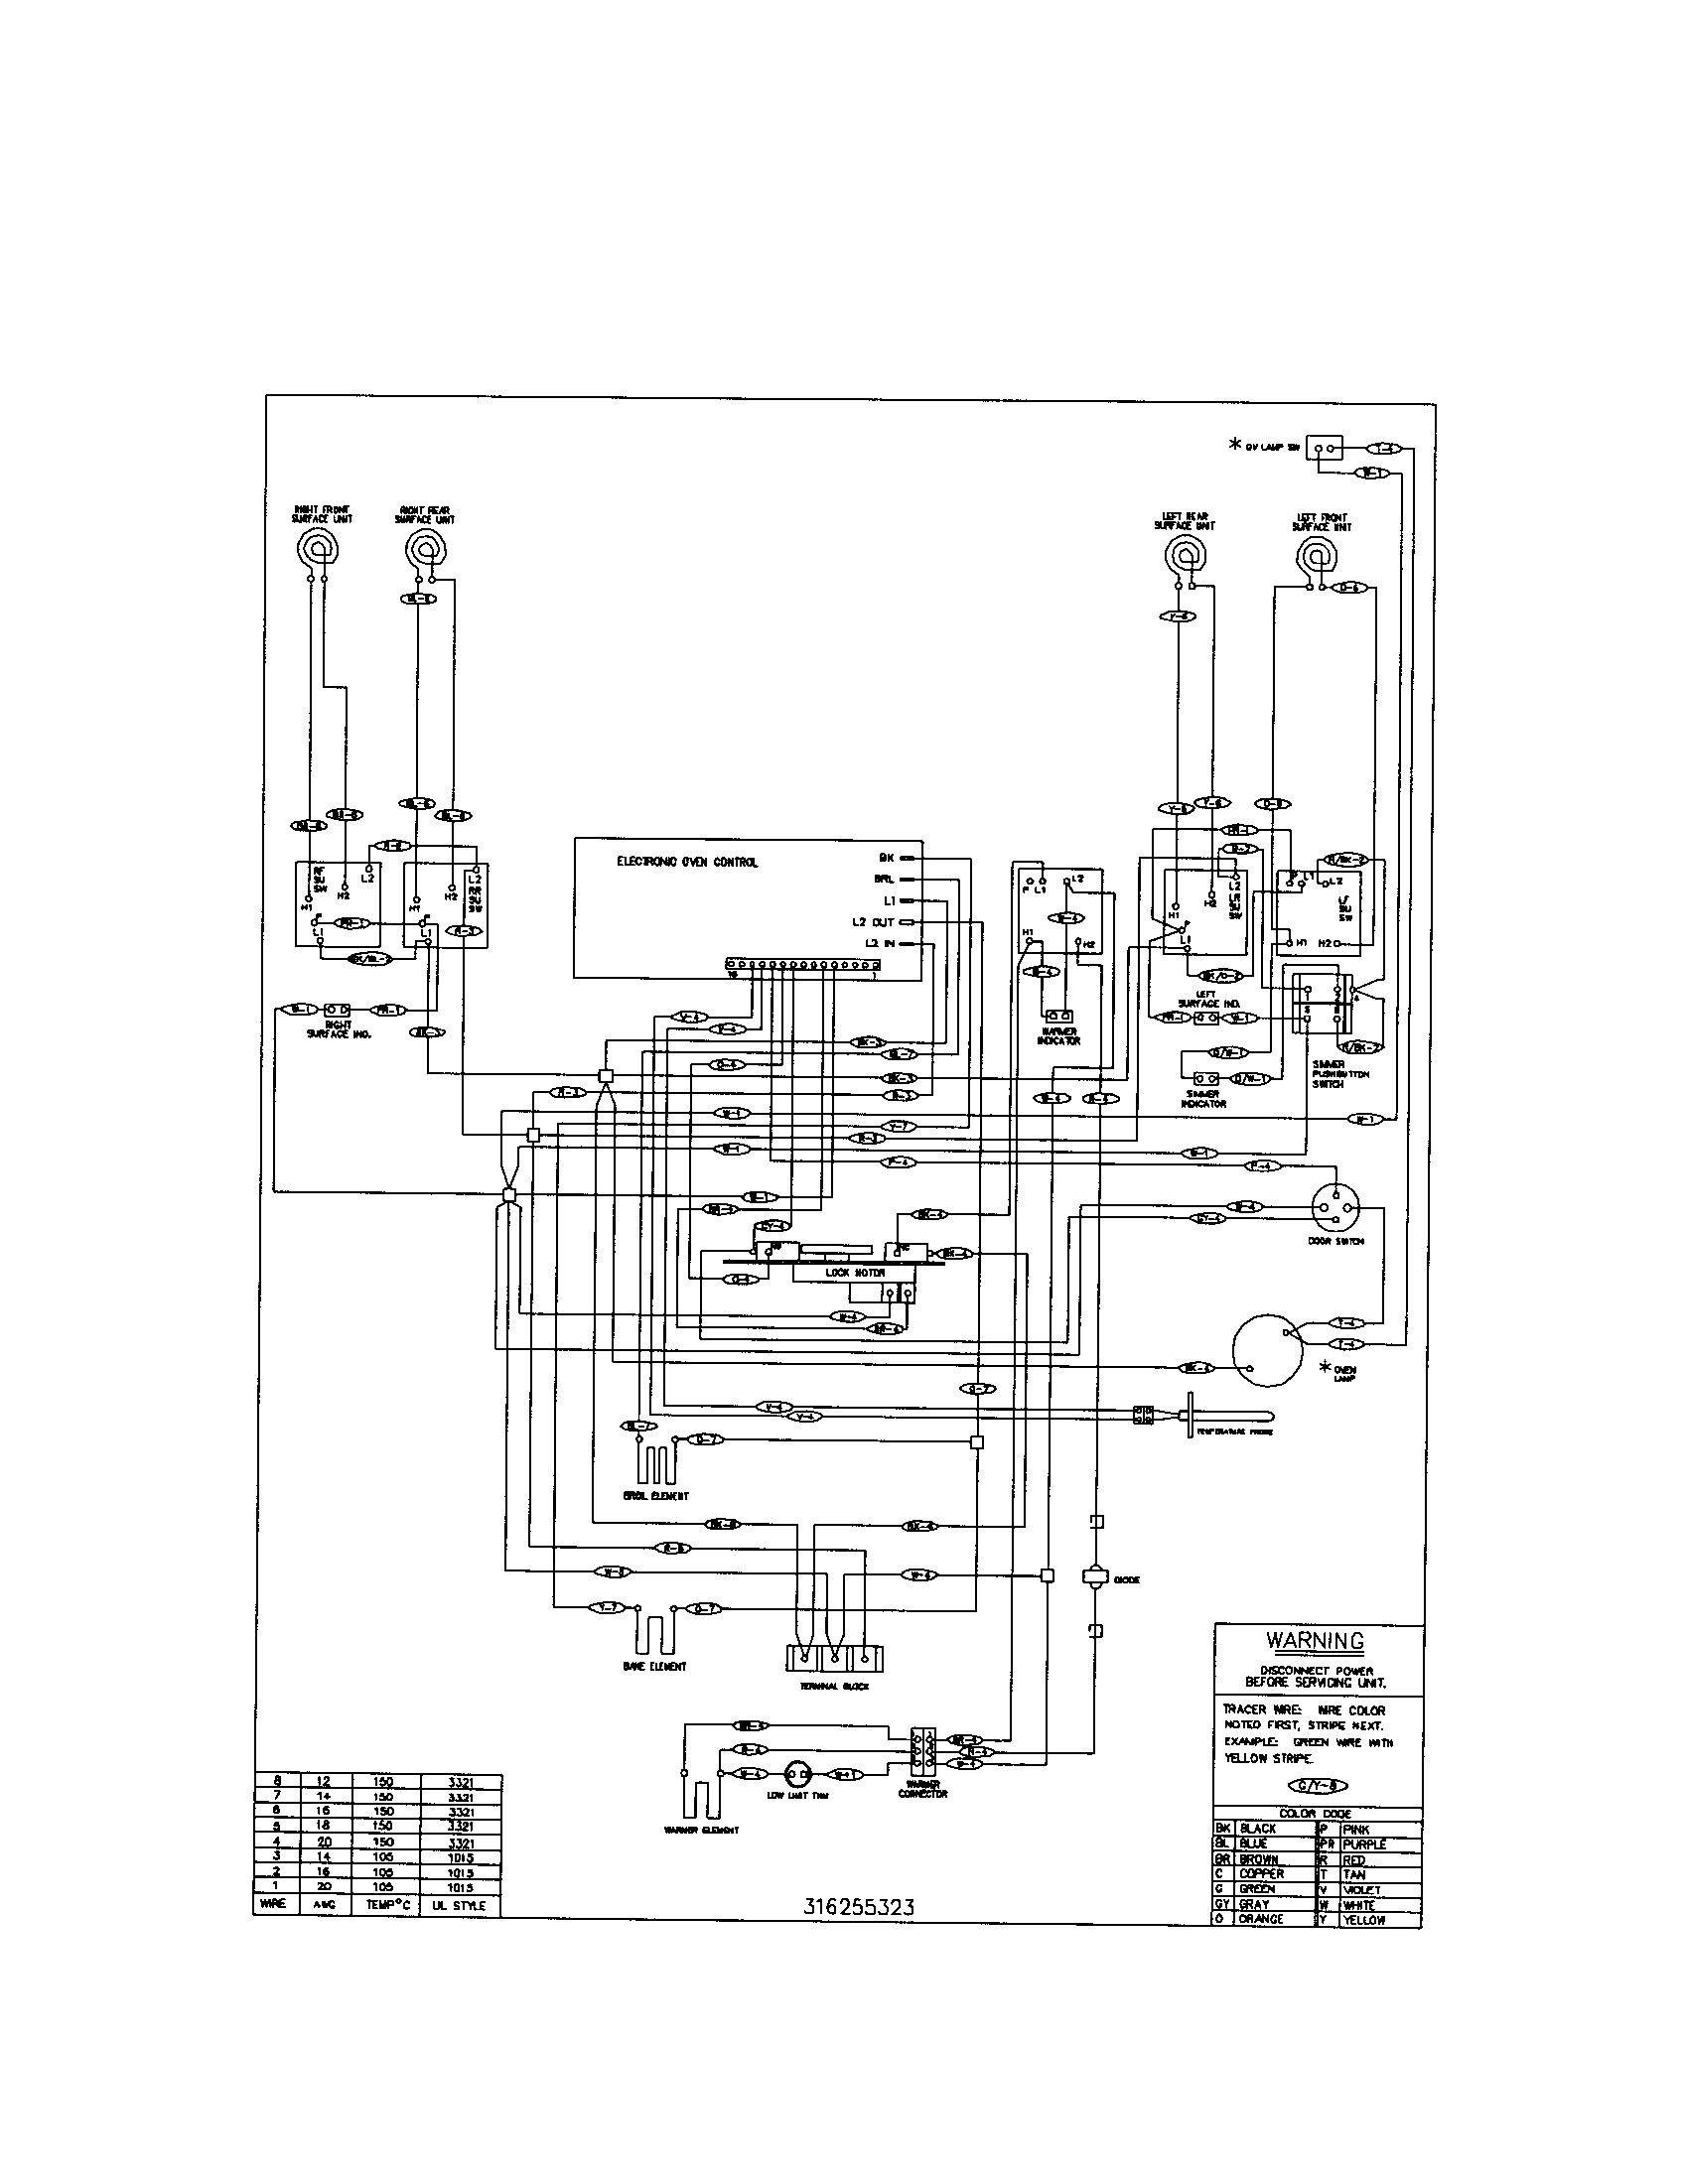 Dto Pdf Format Kenmore Electric Range Wiring Diagram Pdf